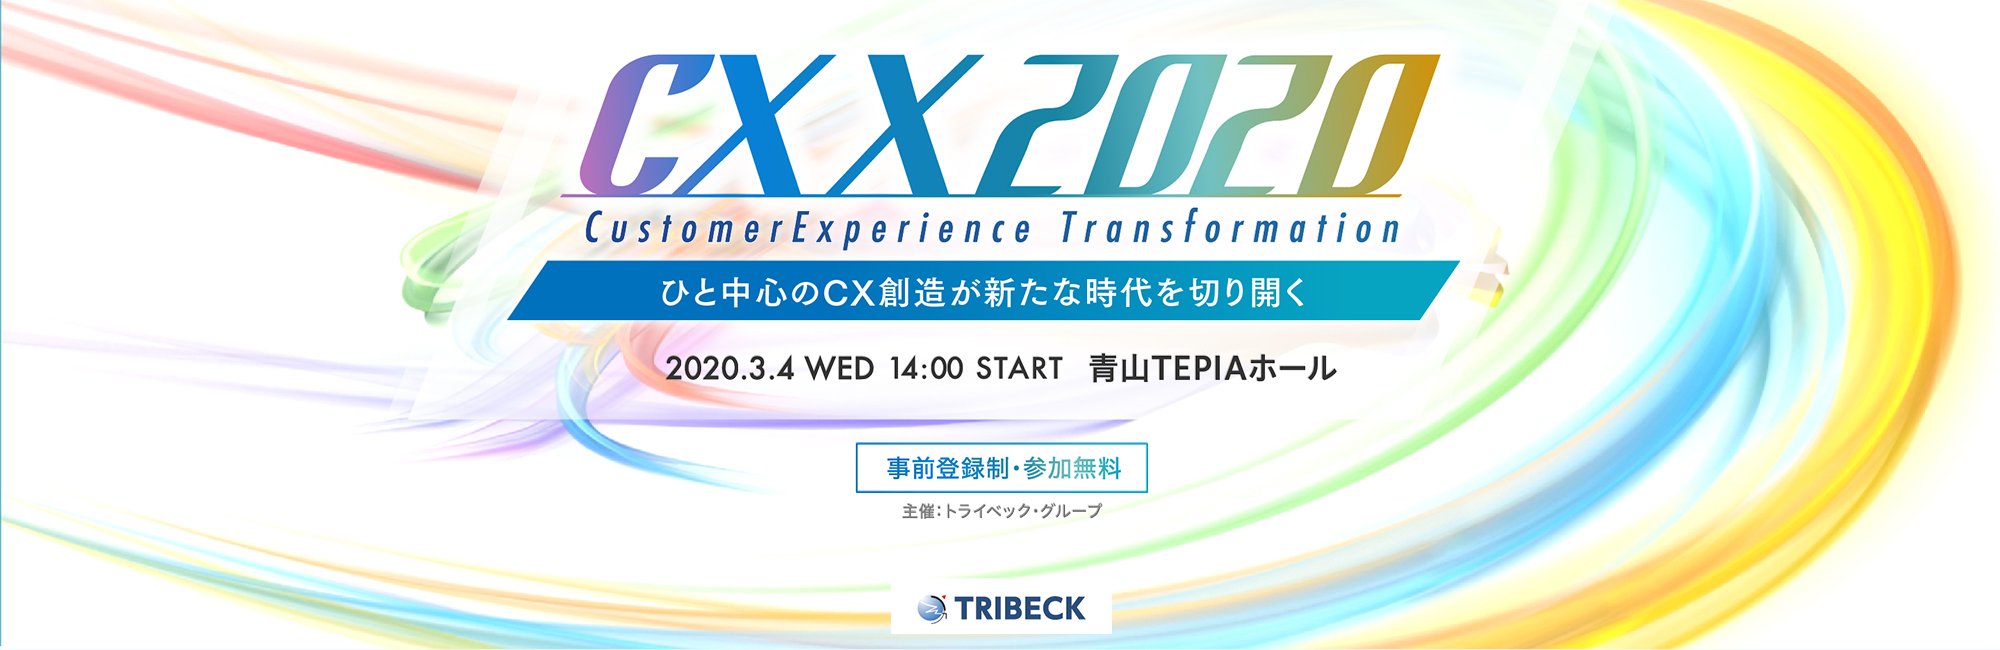 CX Transformation 2020 ～ひと中心のCX創造が新たな時代を切り開く～